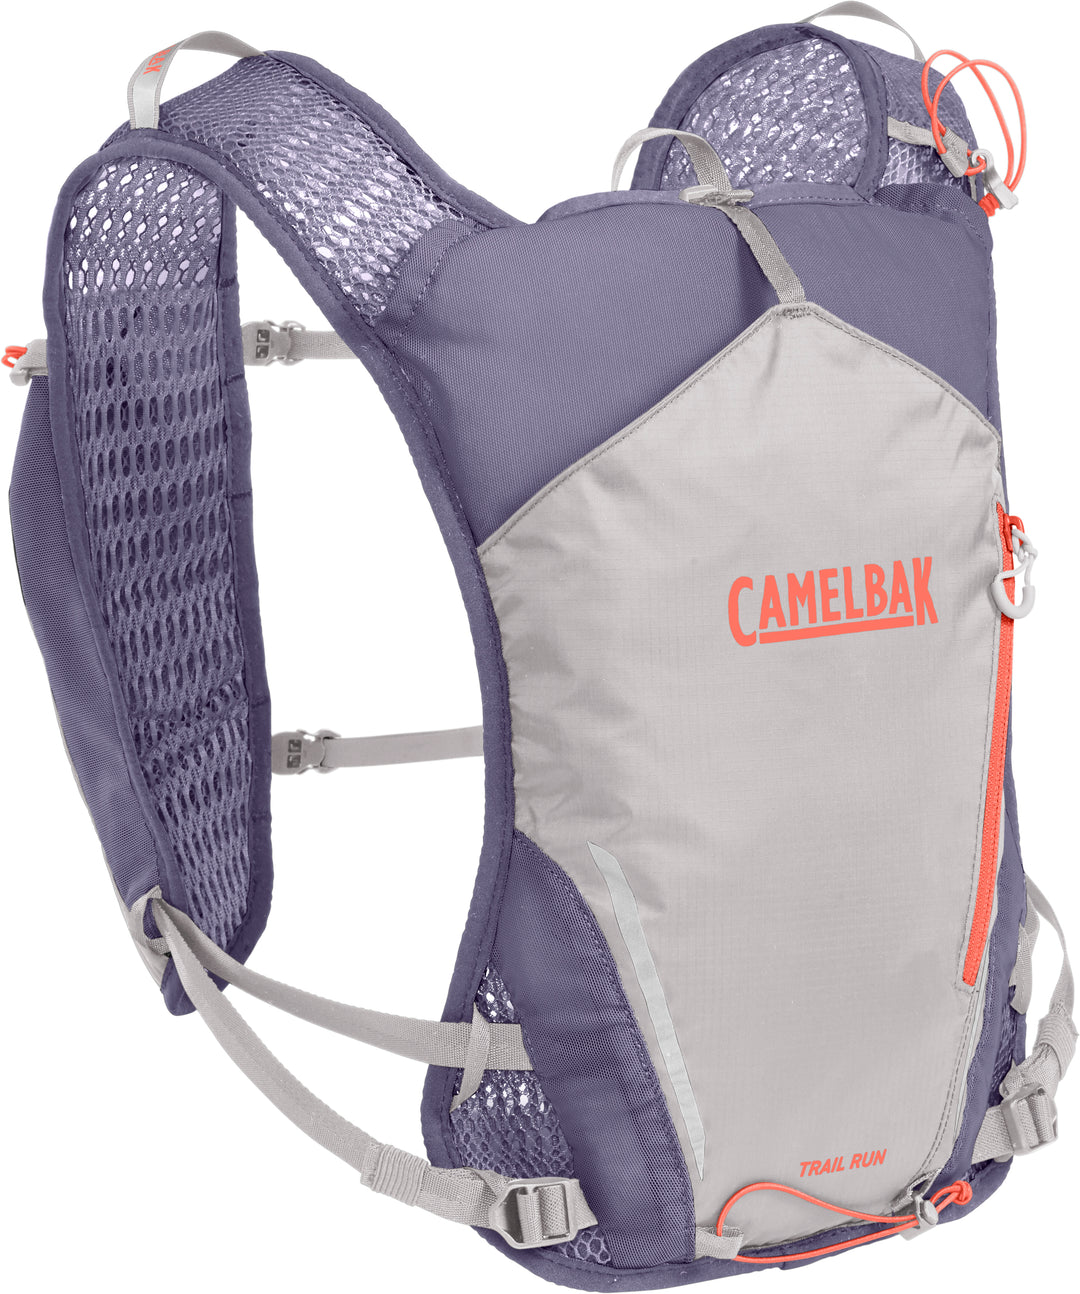 Camelbak Trail Run Vest